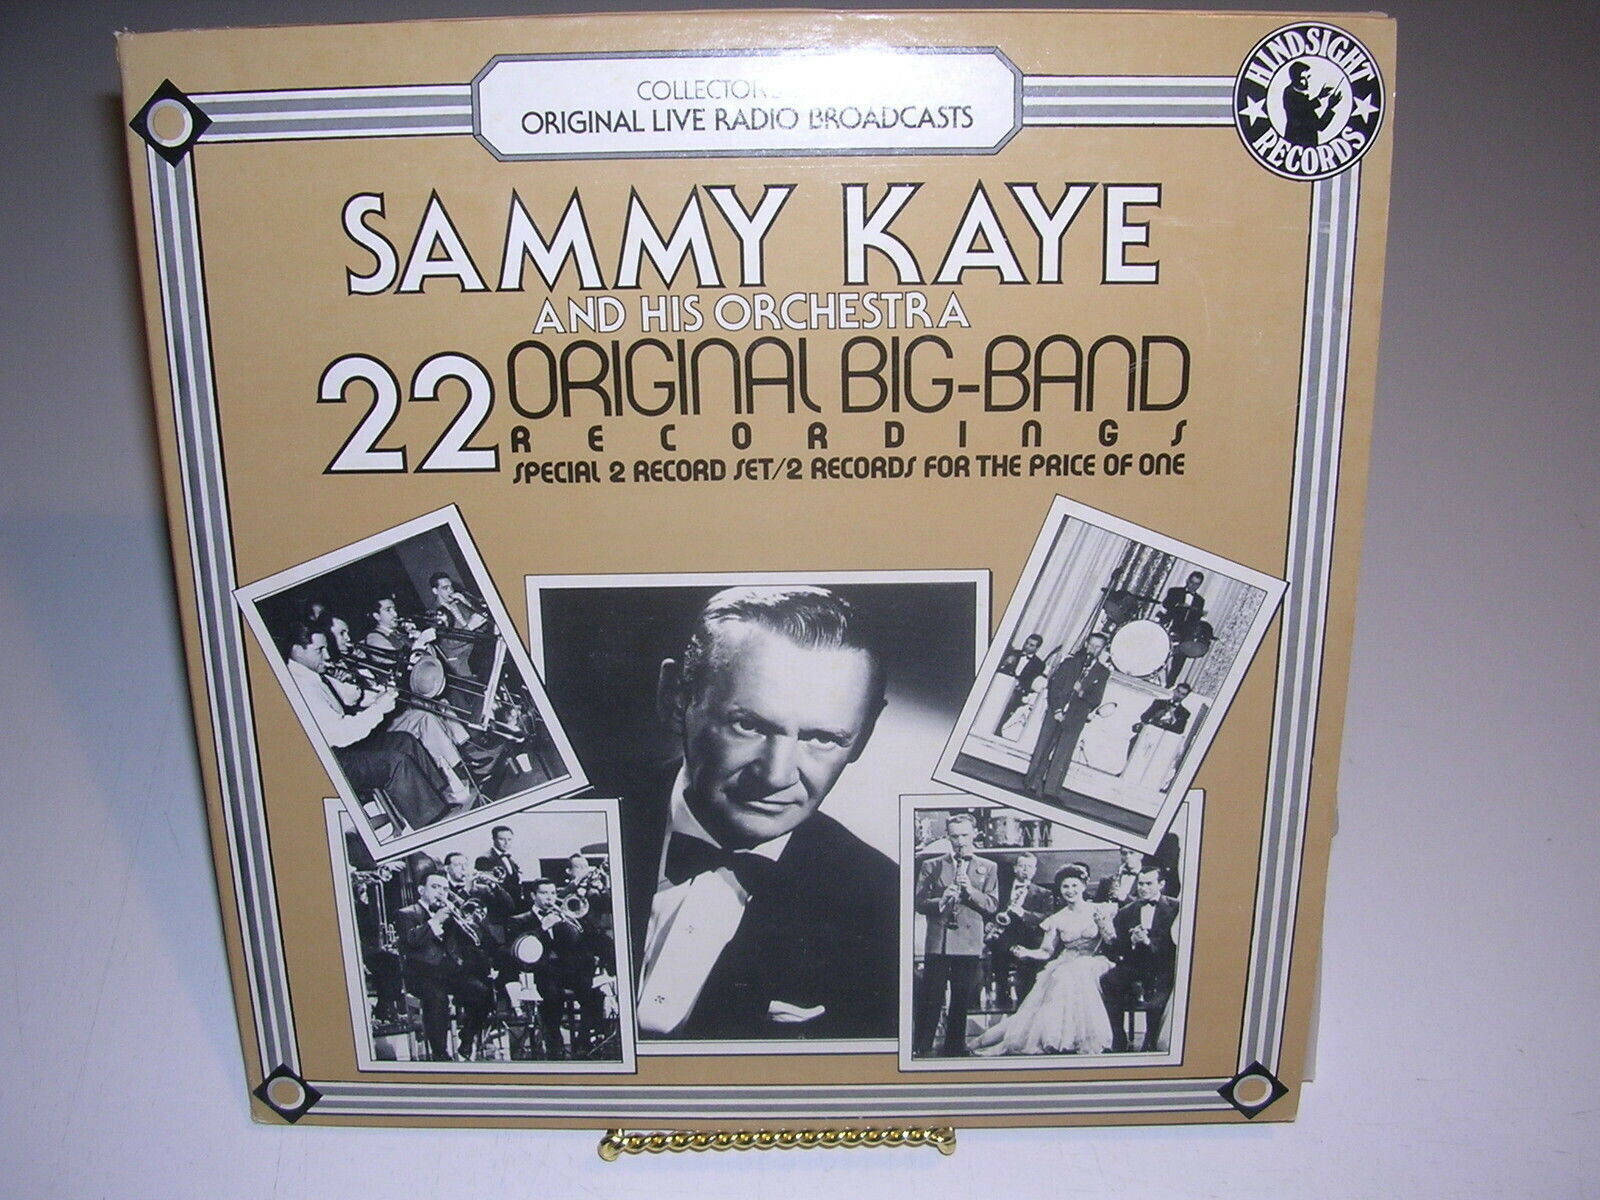 Sammy Kaye og hans orkester Vinyl Cover giver et unikt retro look. Wallpaper